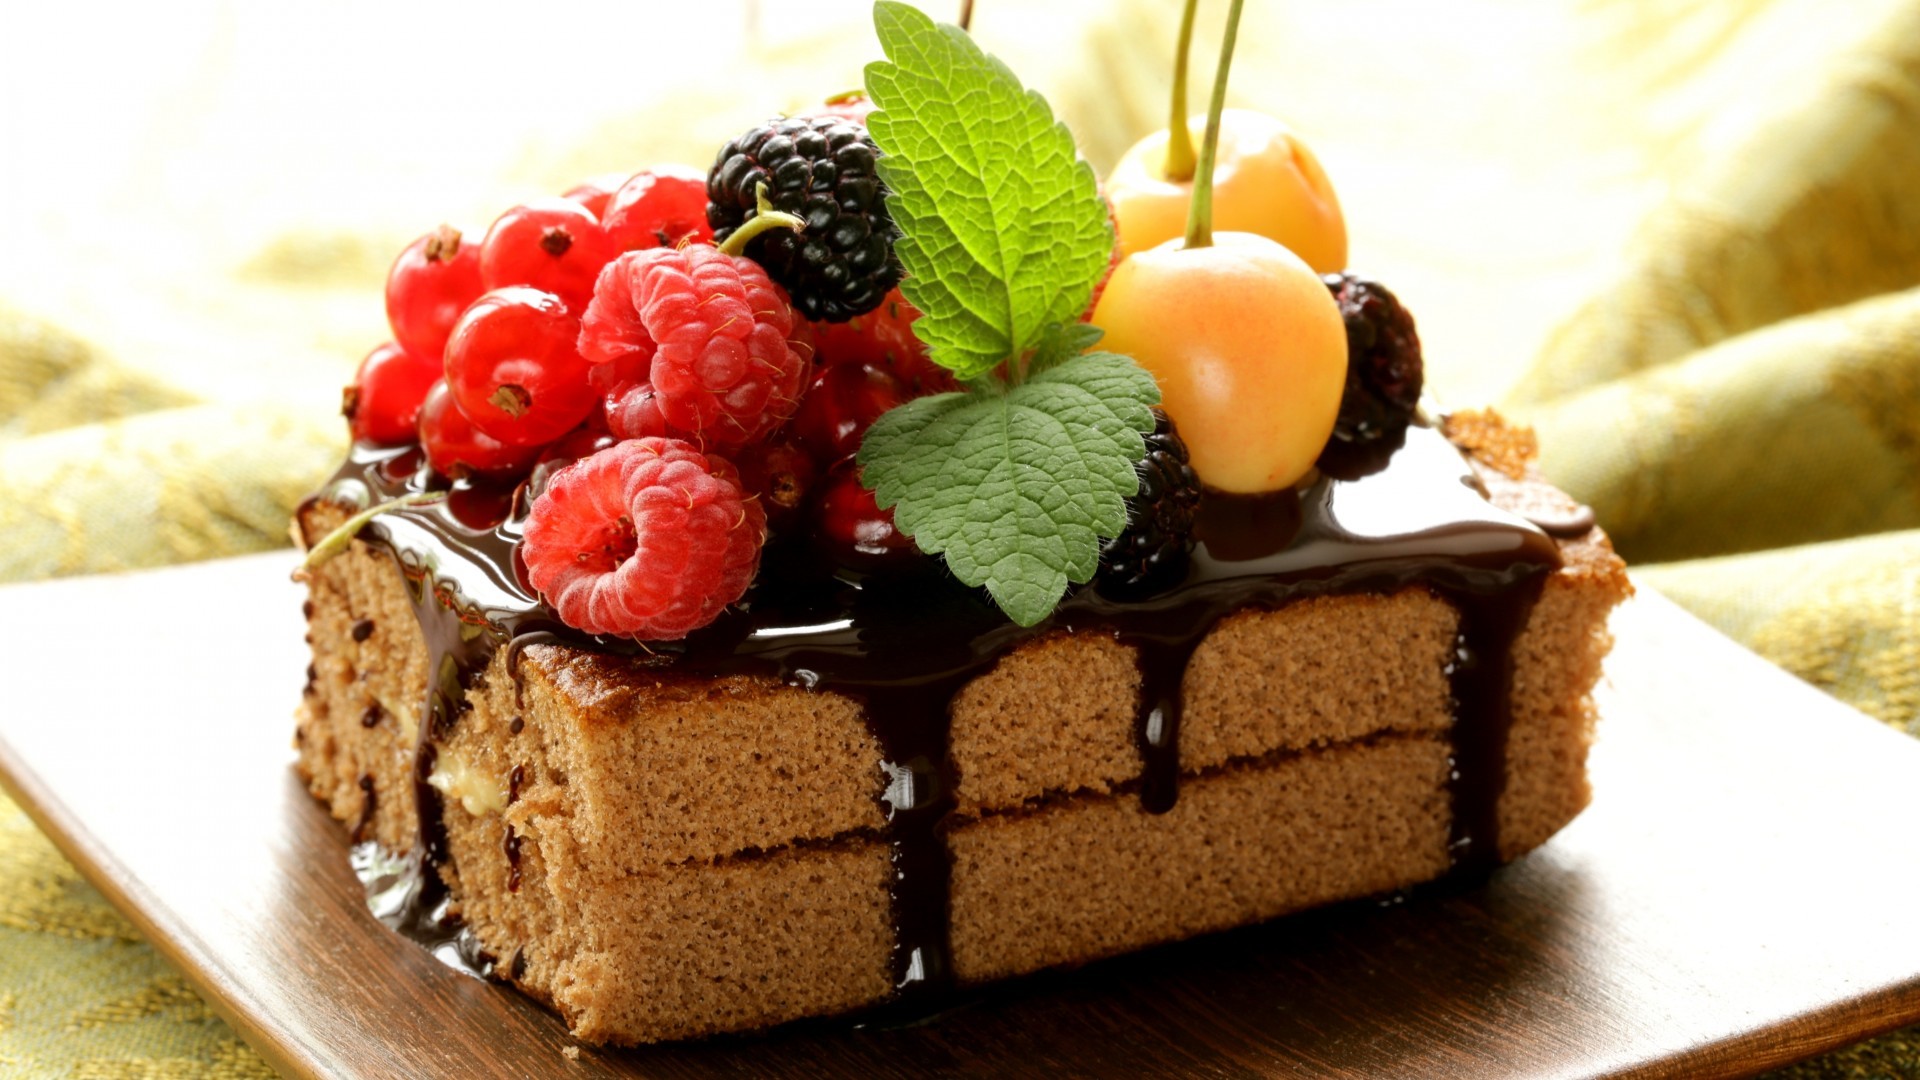 General 1920x1080 dessert cake fruit chocolate raspberries food berries cherries blackberries vibrant closeup